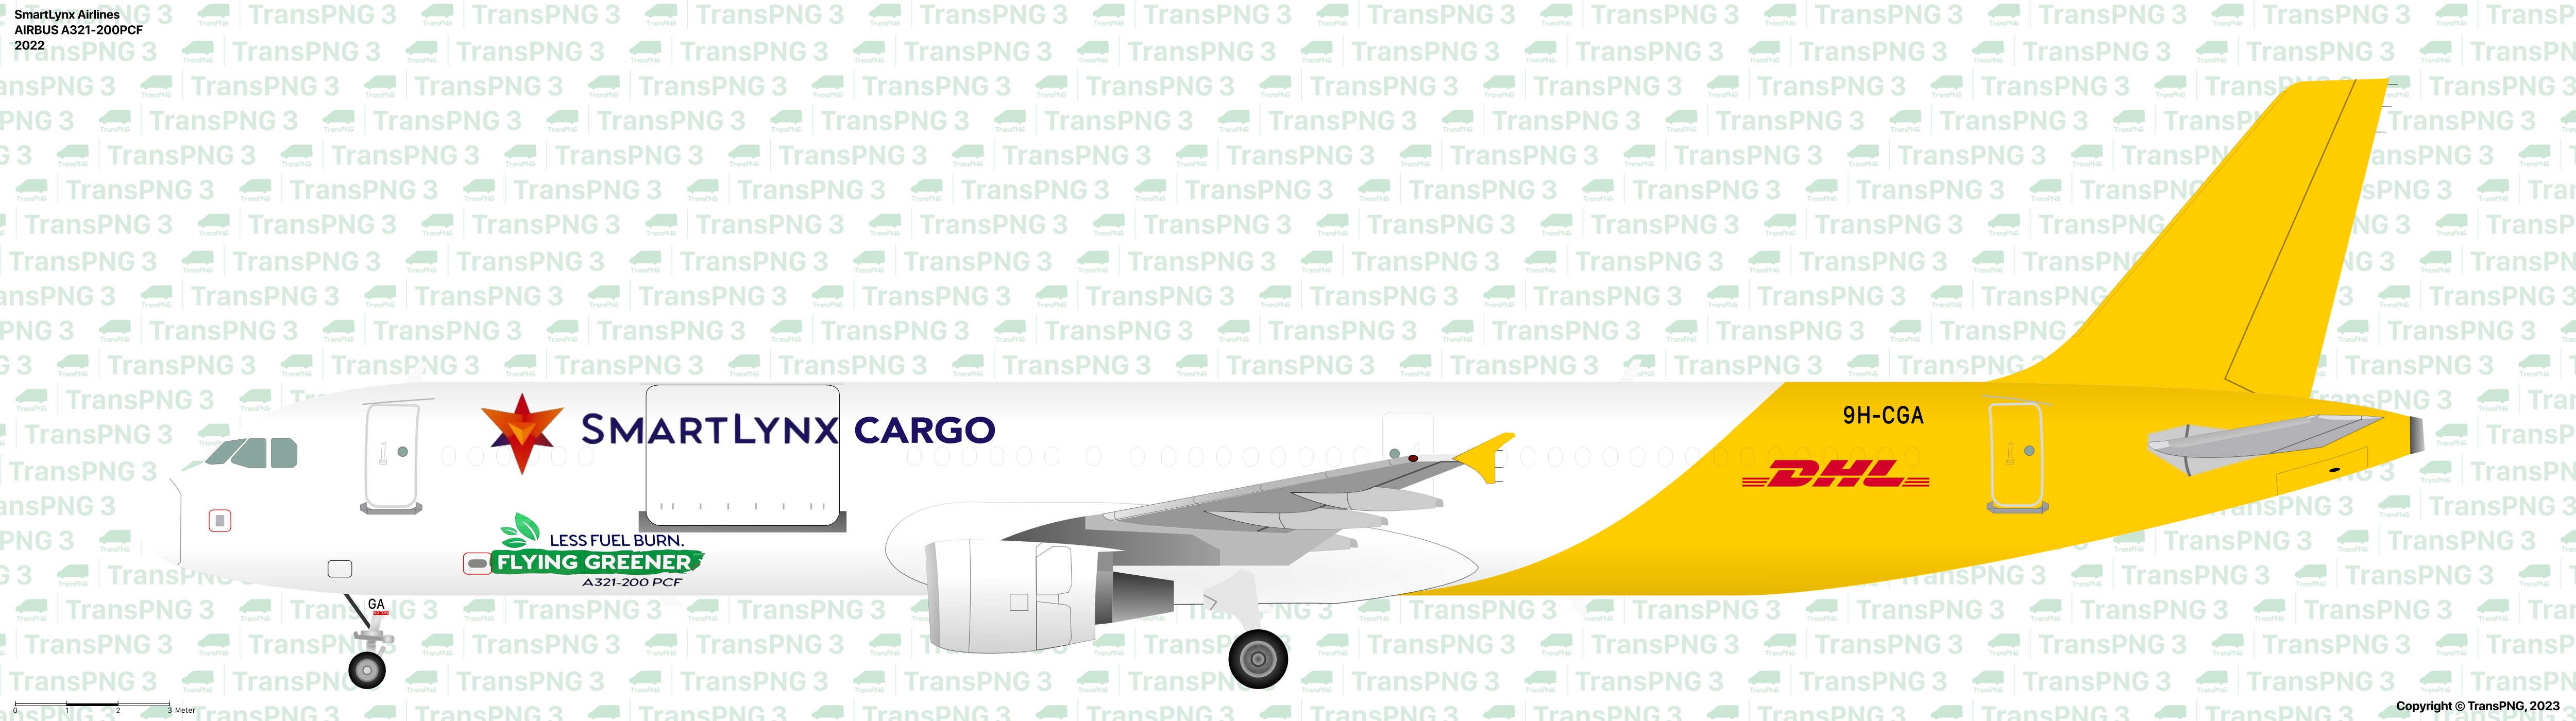 TransPNG.net | 分享世界各地多種交通工具的優秀繪圖 - 貨機 53157604257_f80149ce4e_o